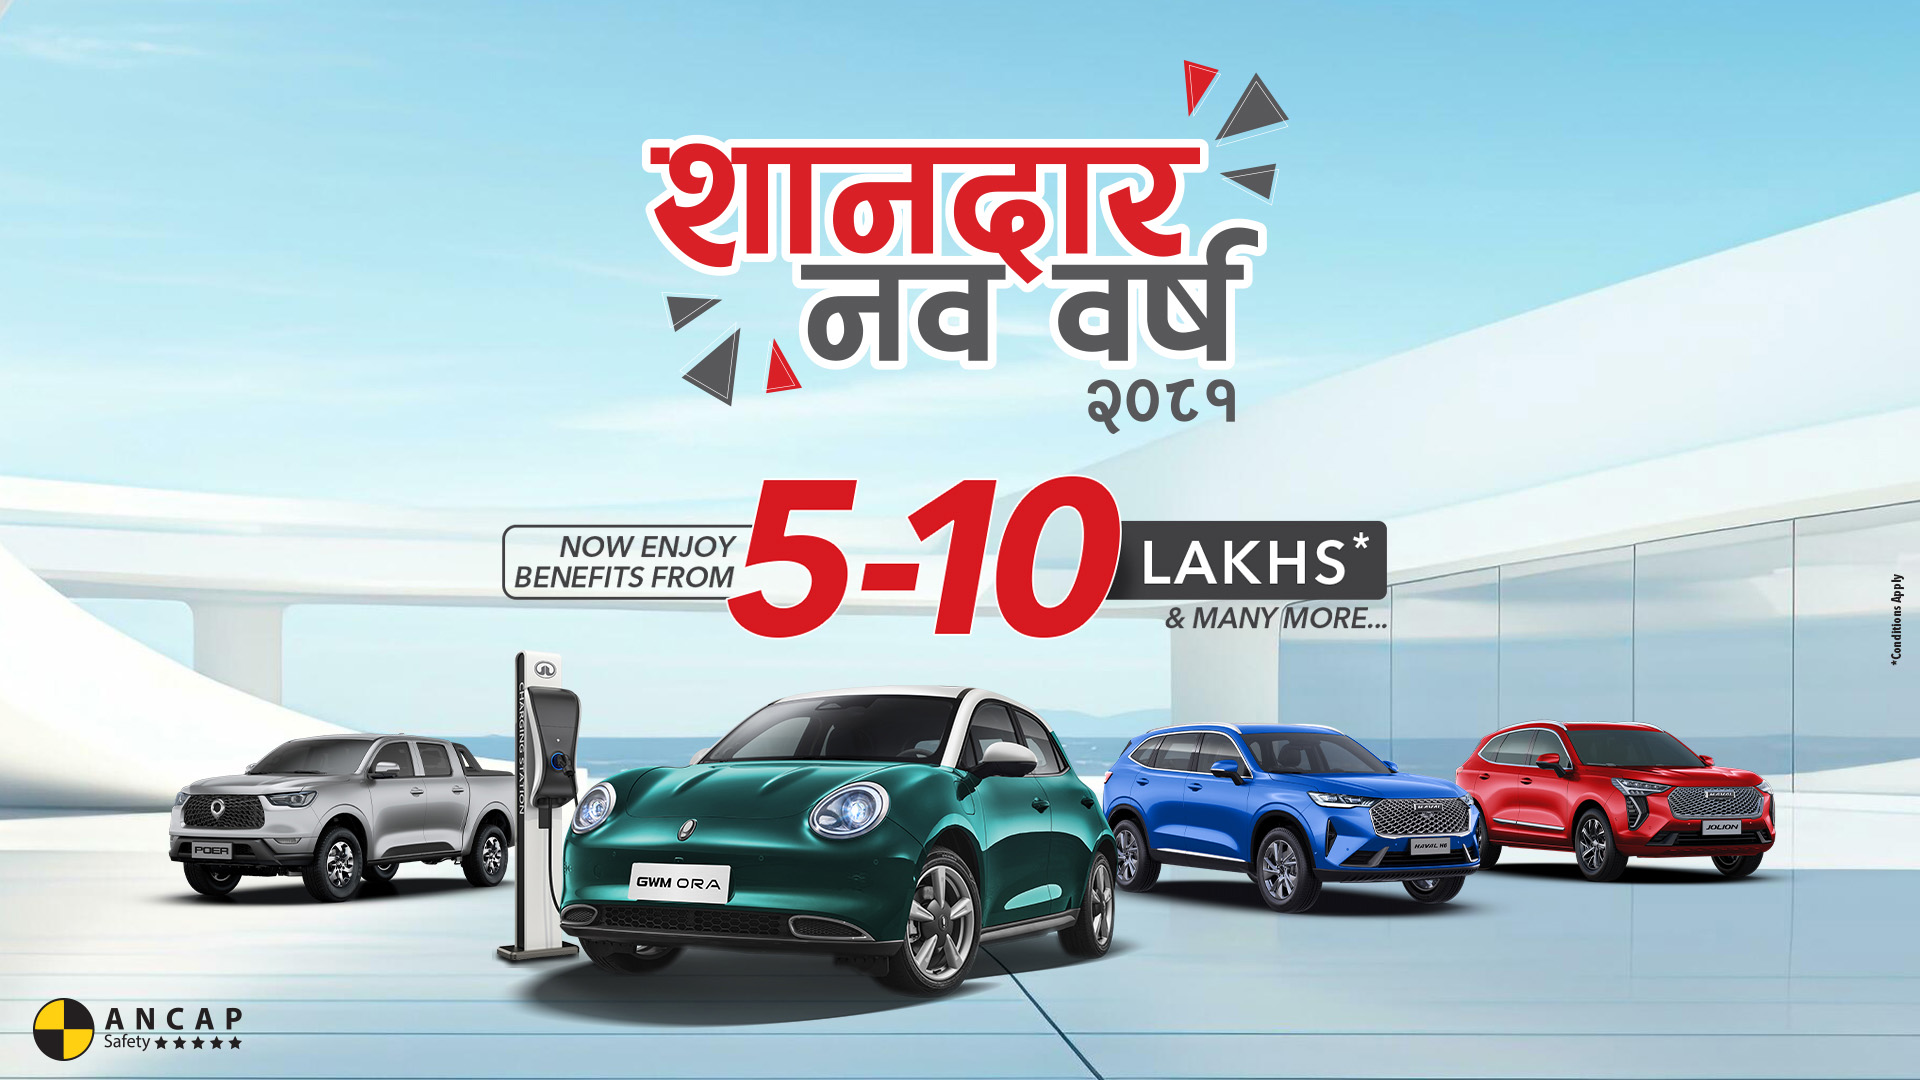 Great Wall Motor Nepal unveils 'Sandaar Nawabarsha 2081' offers